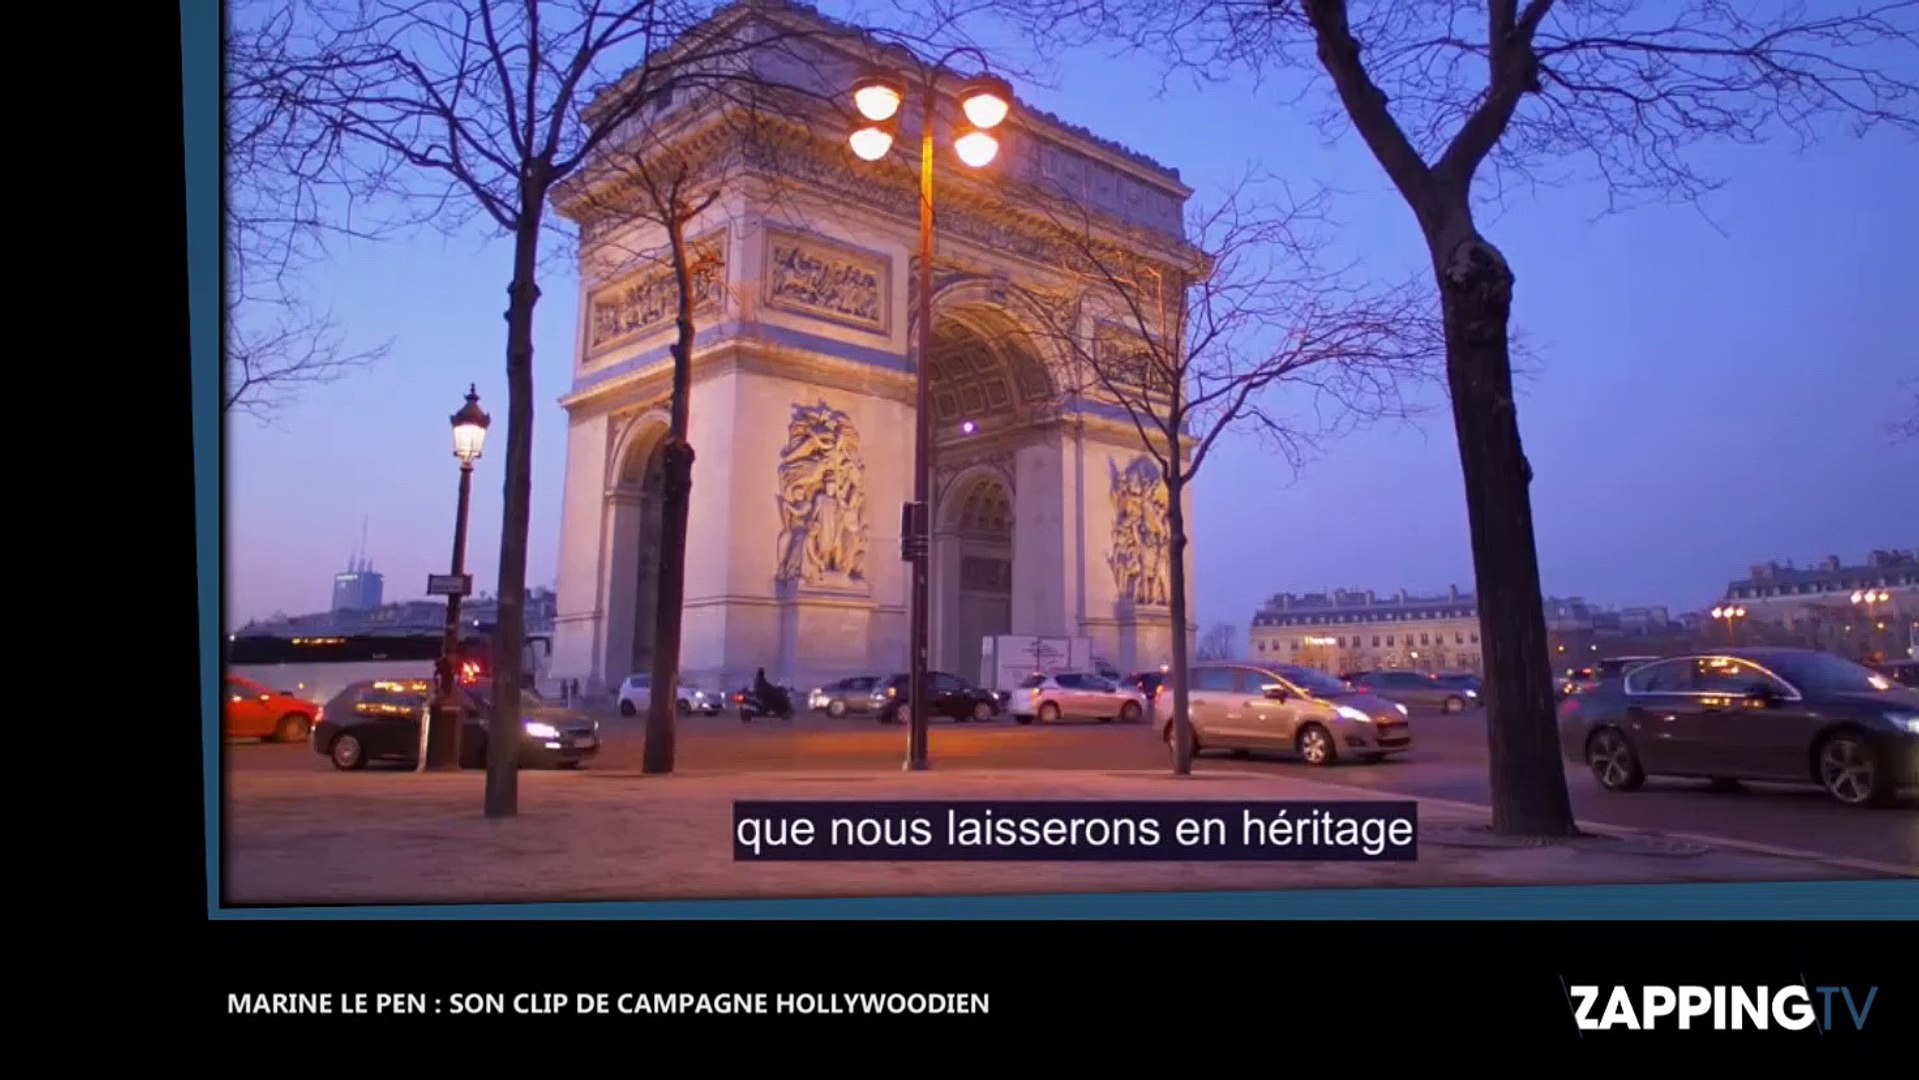 Marine Le Pen : son clip de campagne "hollywoodien" fait le buzz (vidéo) -  Vidéo Dailymotion